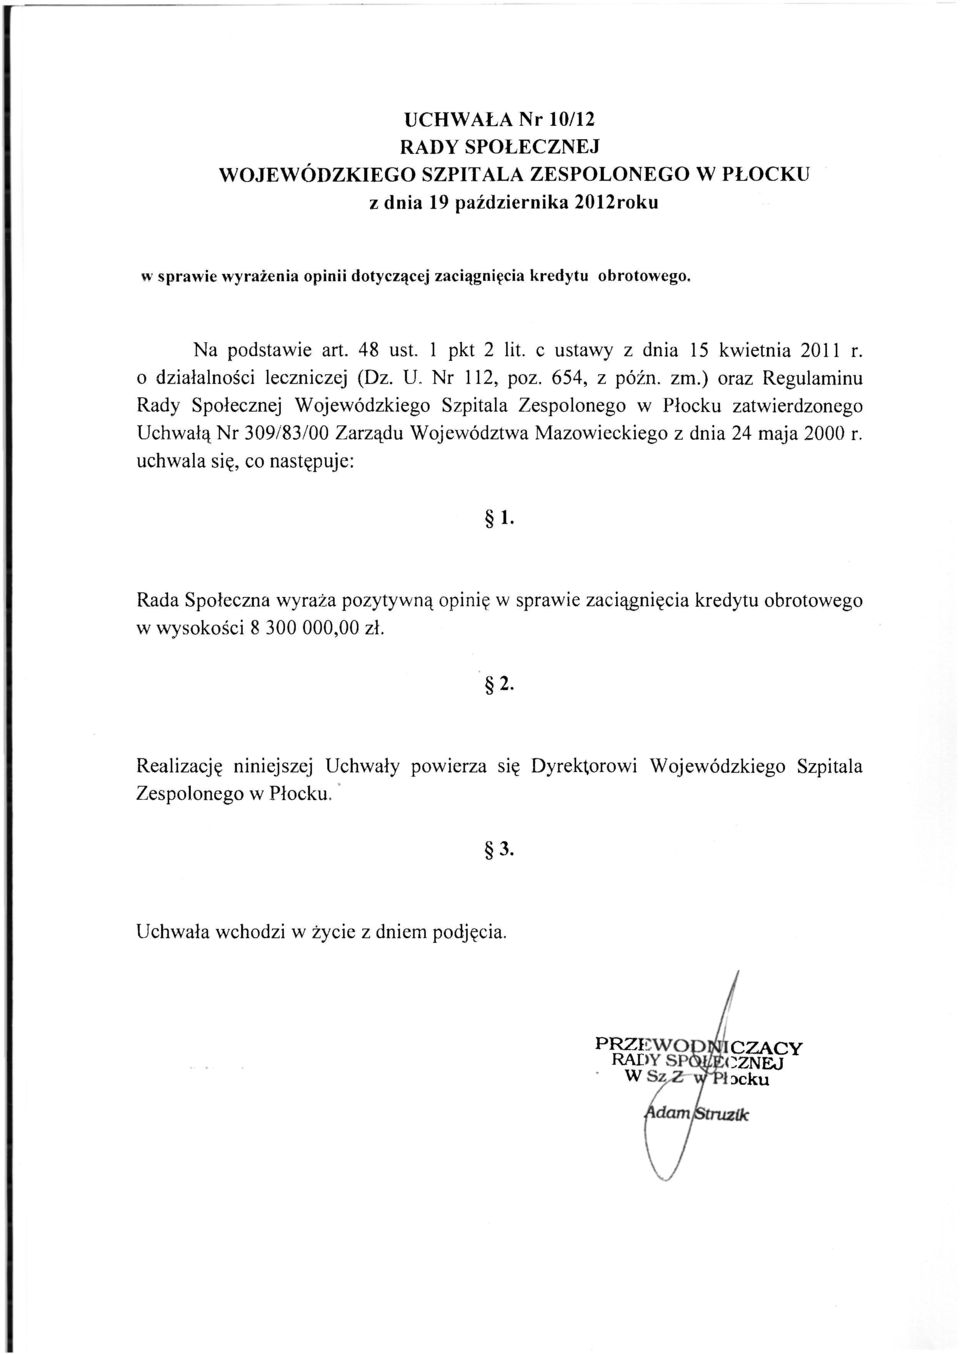 ) oraz Regulaminu Rady Społecznej Wojewódzkiego Szpitala Zespolonego w Płocku zatwierdzonego Uchwałą Nr 309/83/00 Zarządu Województwa Mazowieckiego z dnia 24 maja 2000 r.